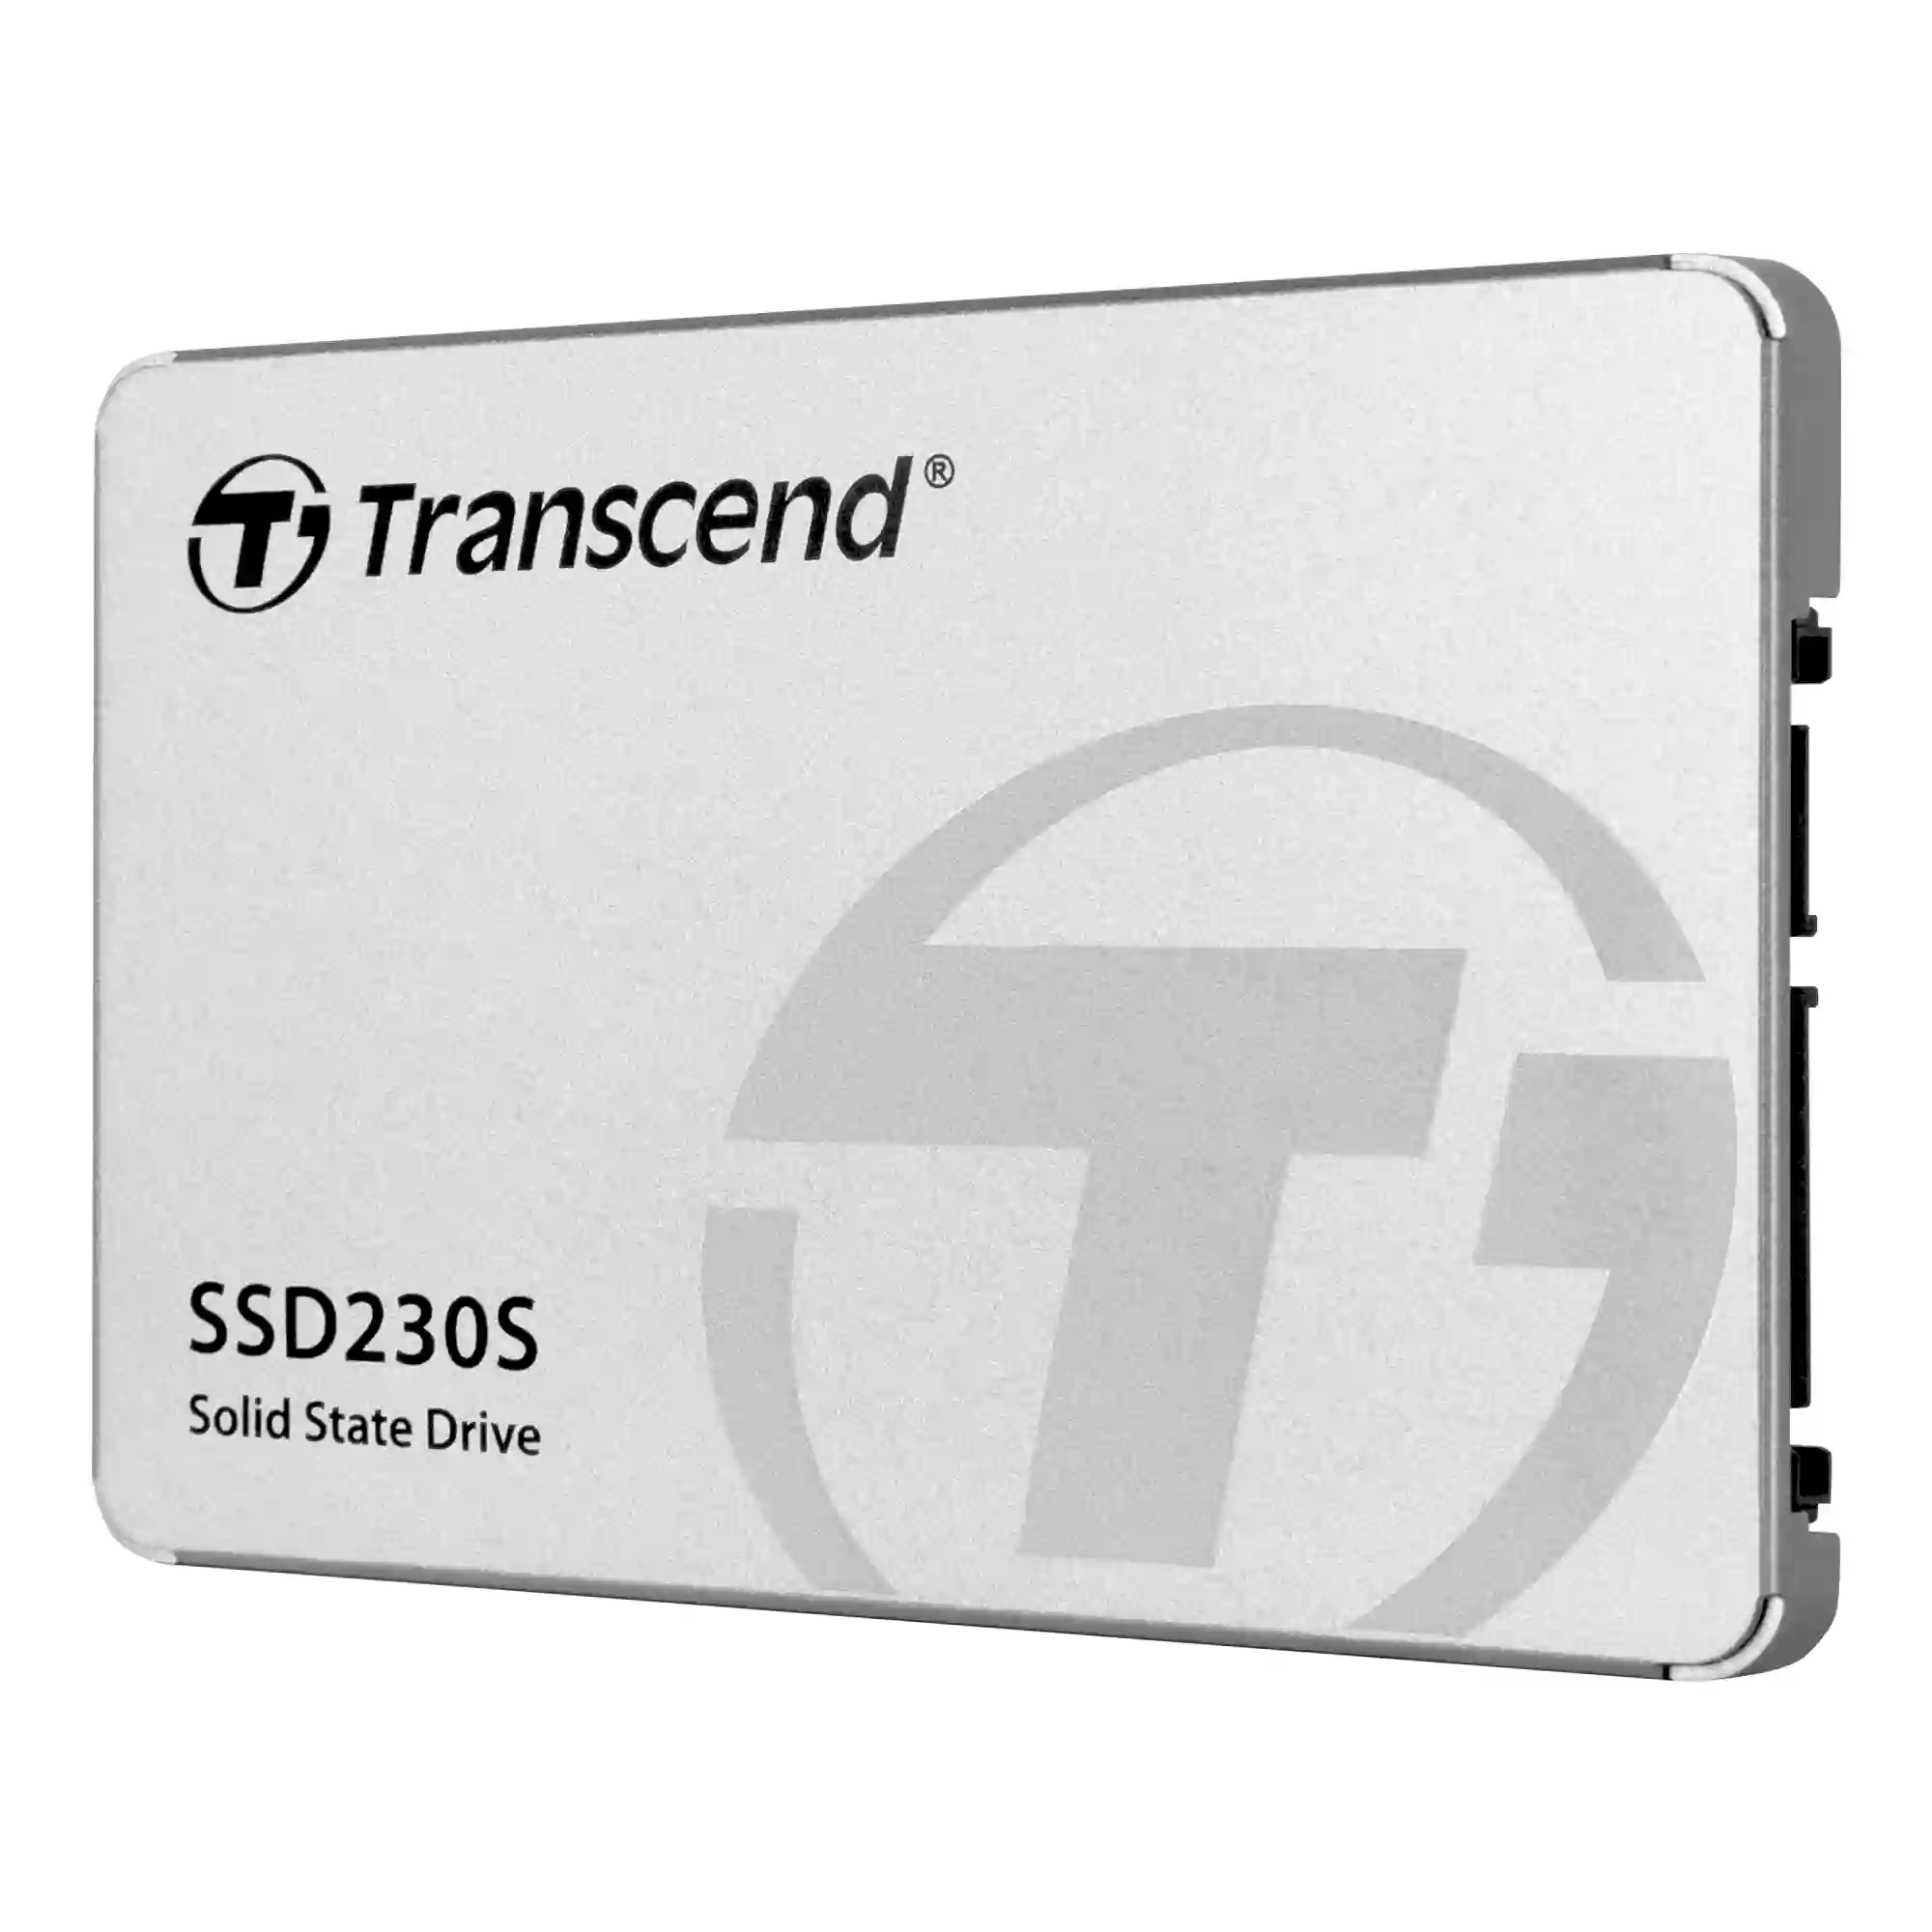 Внутренний SSD диск TRANSCEND 512GB, 2.5" TS512GSSD230S)